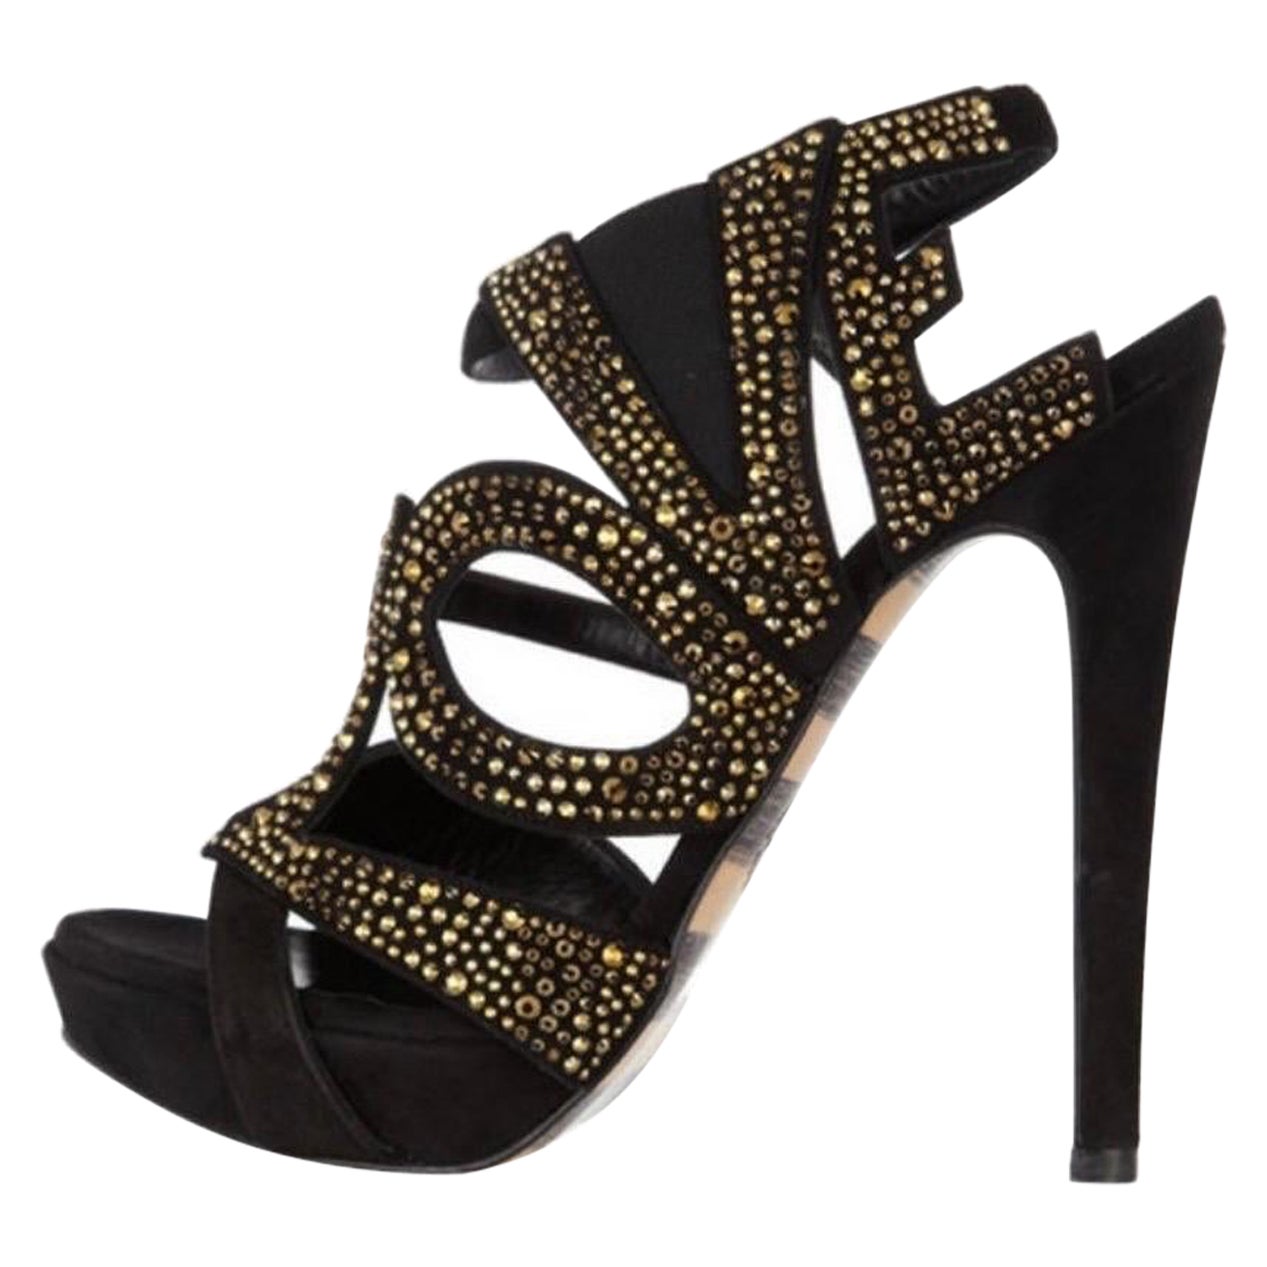 New Georgina Goodman Love crystal-embellished black suede platform sandals 9.5  For Sale